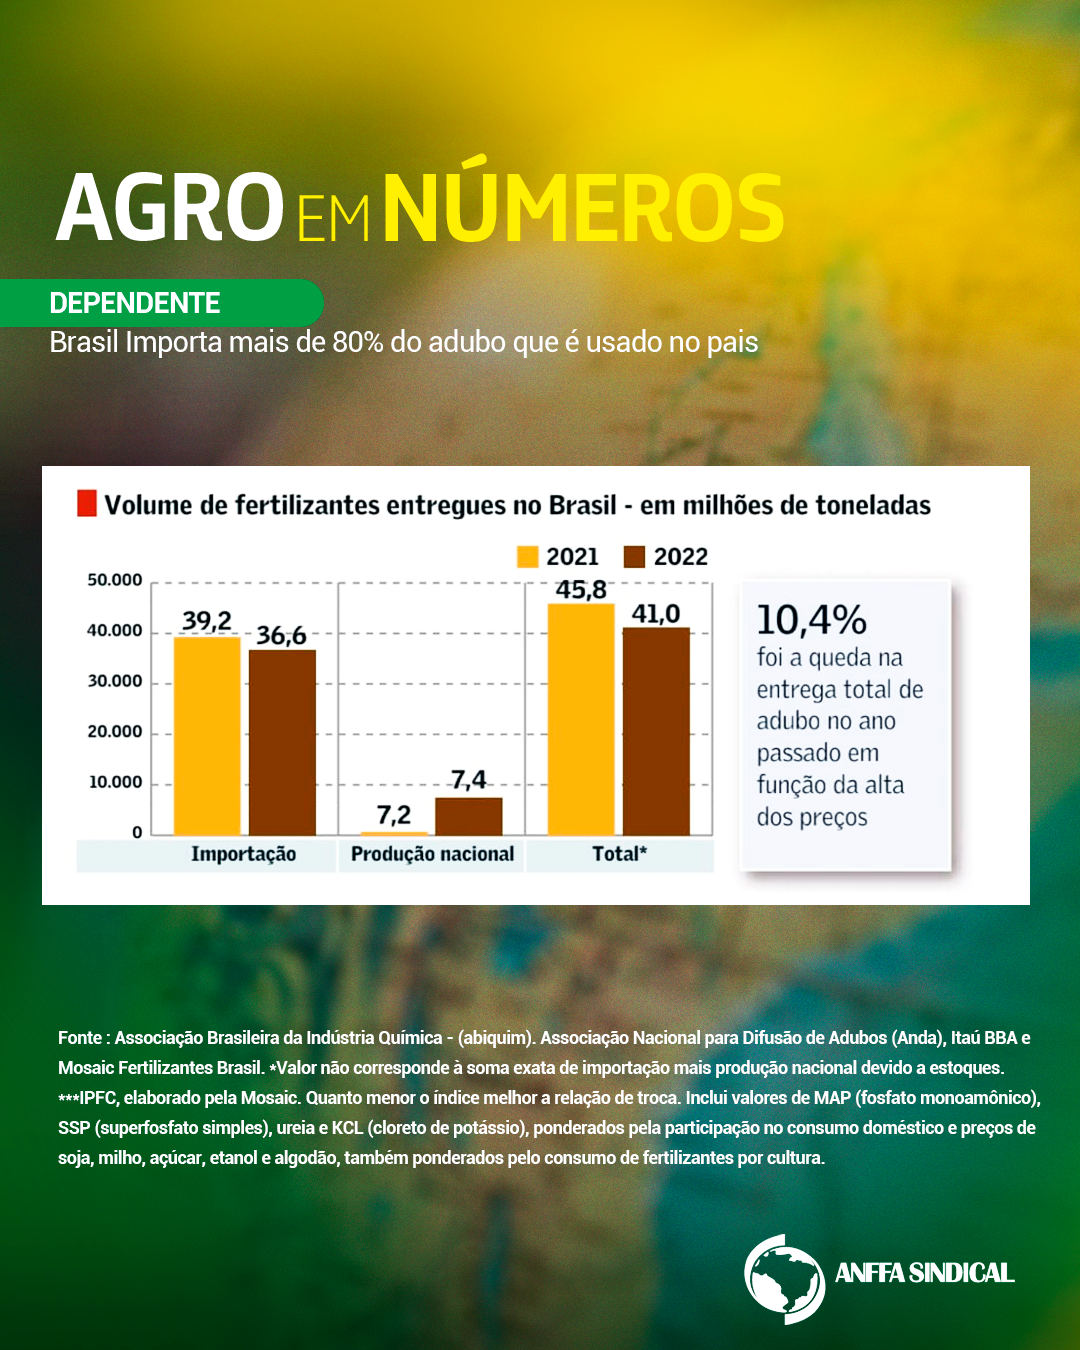 Dependente: Brasil importa mais de 80% do adubo que é usado no país